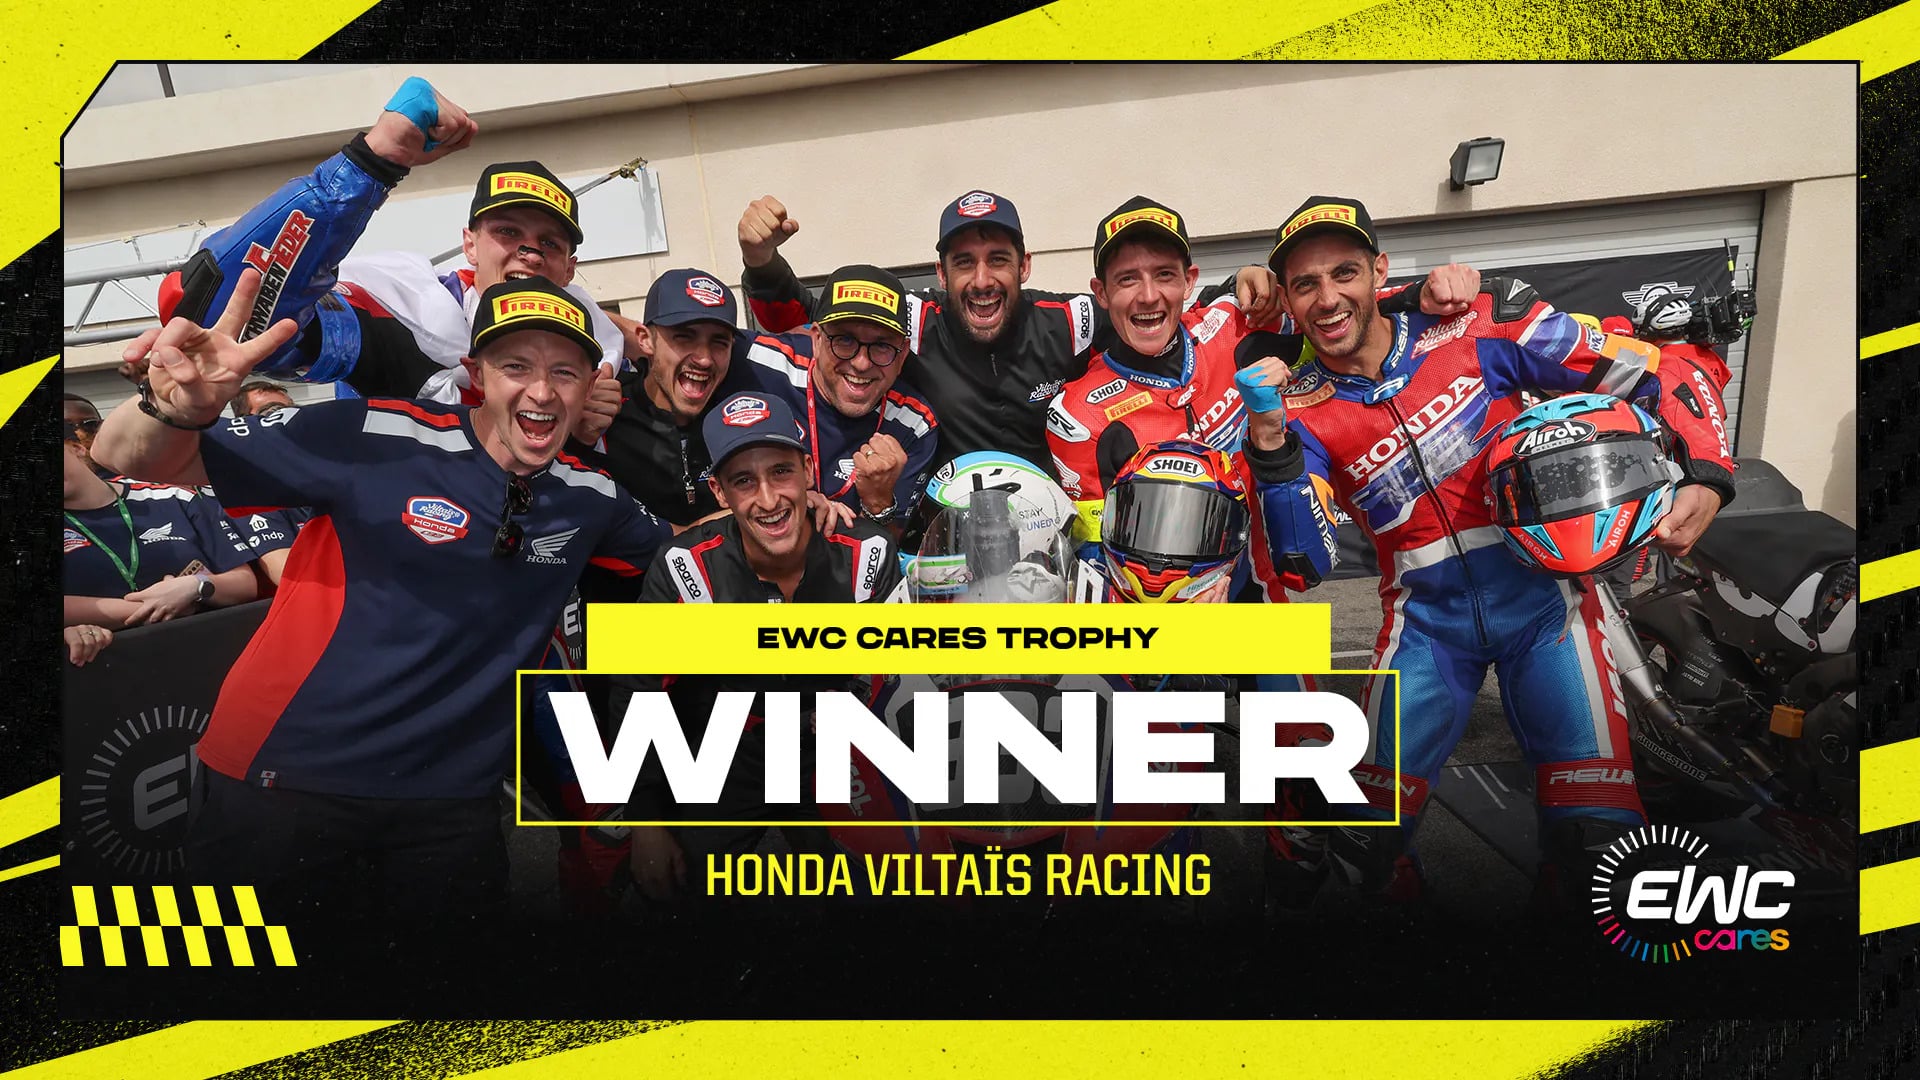 Honda Viltaïs Racing remporte le premier FIM EWC Cares Trophy